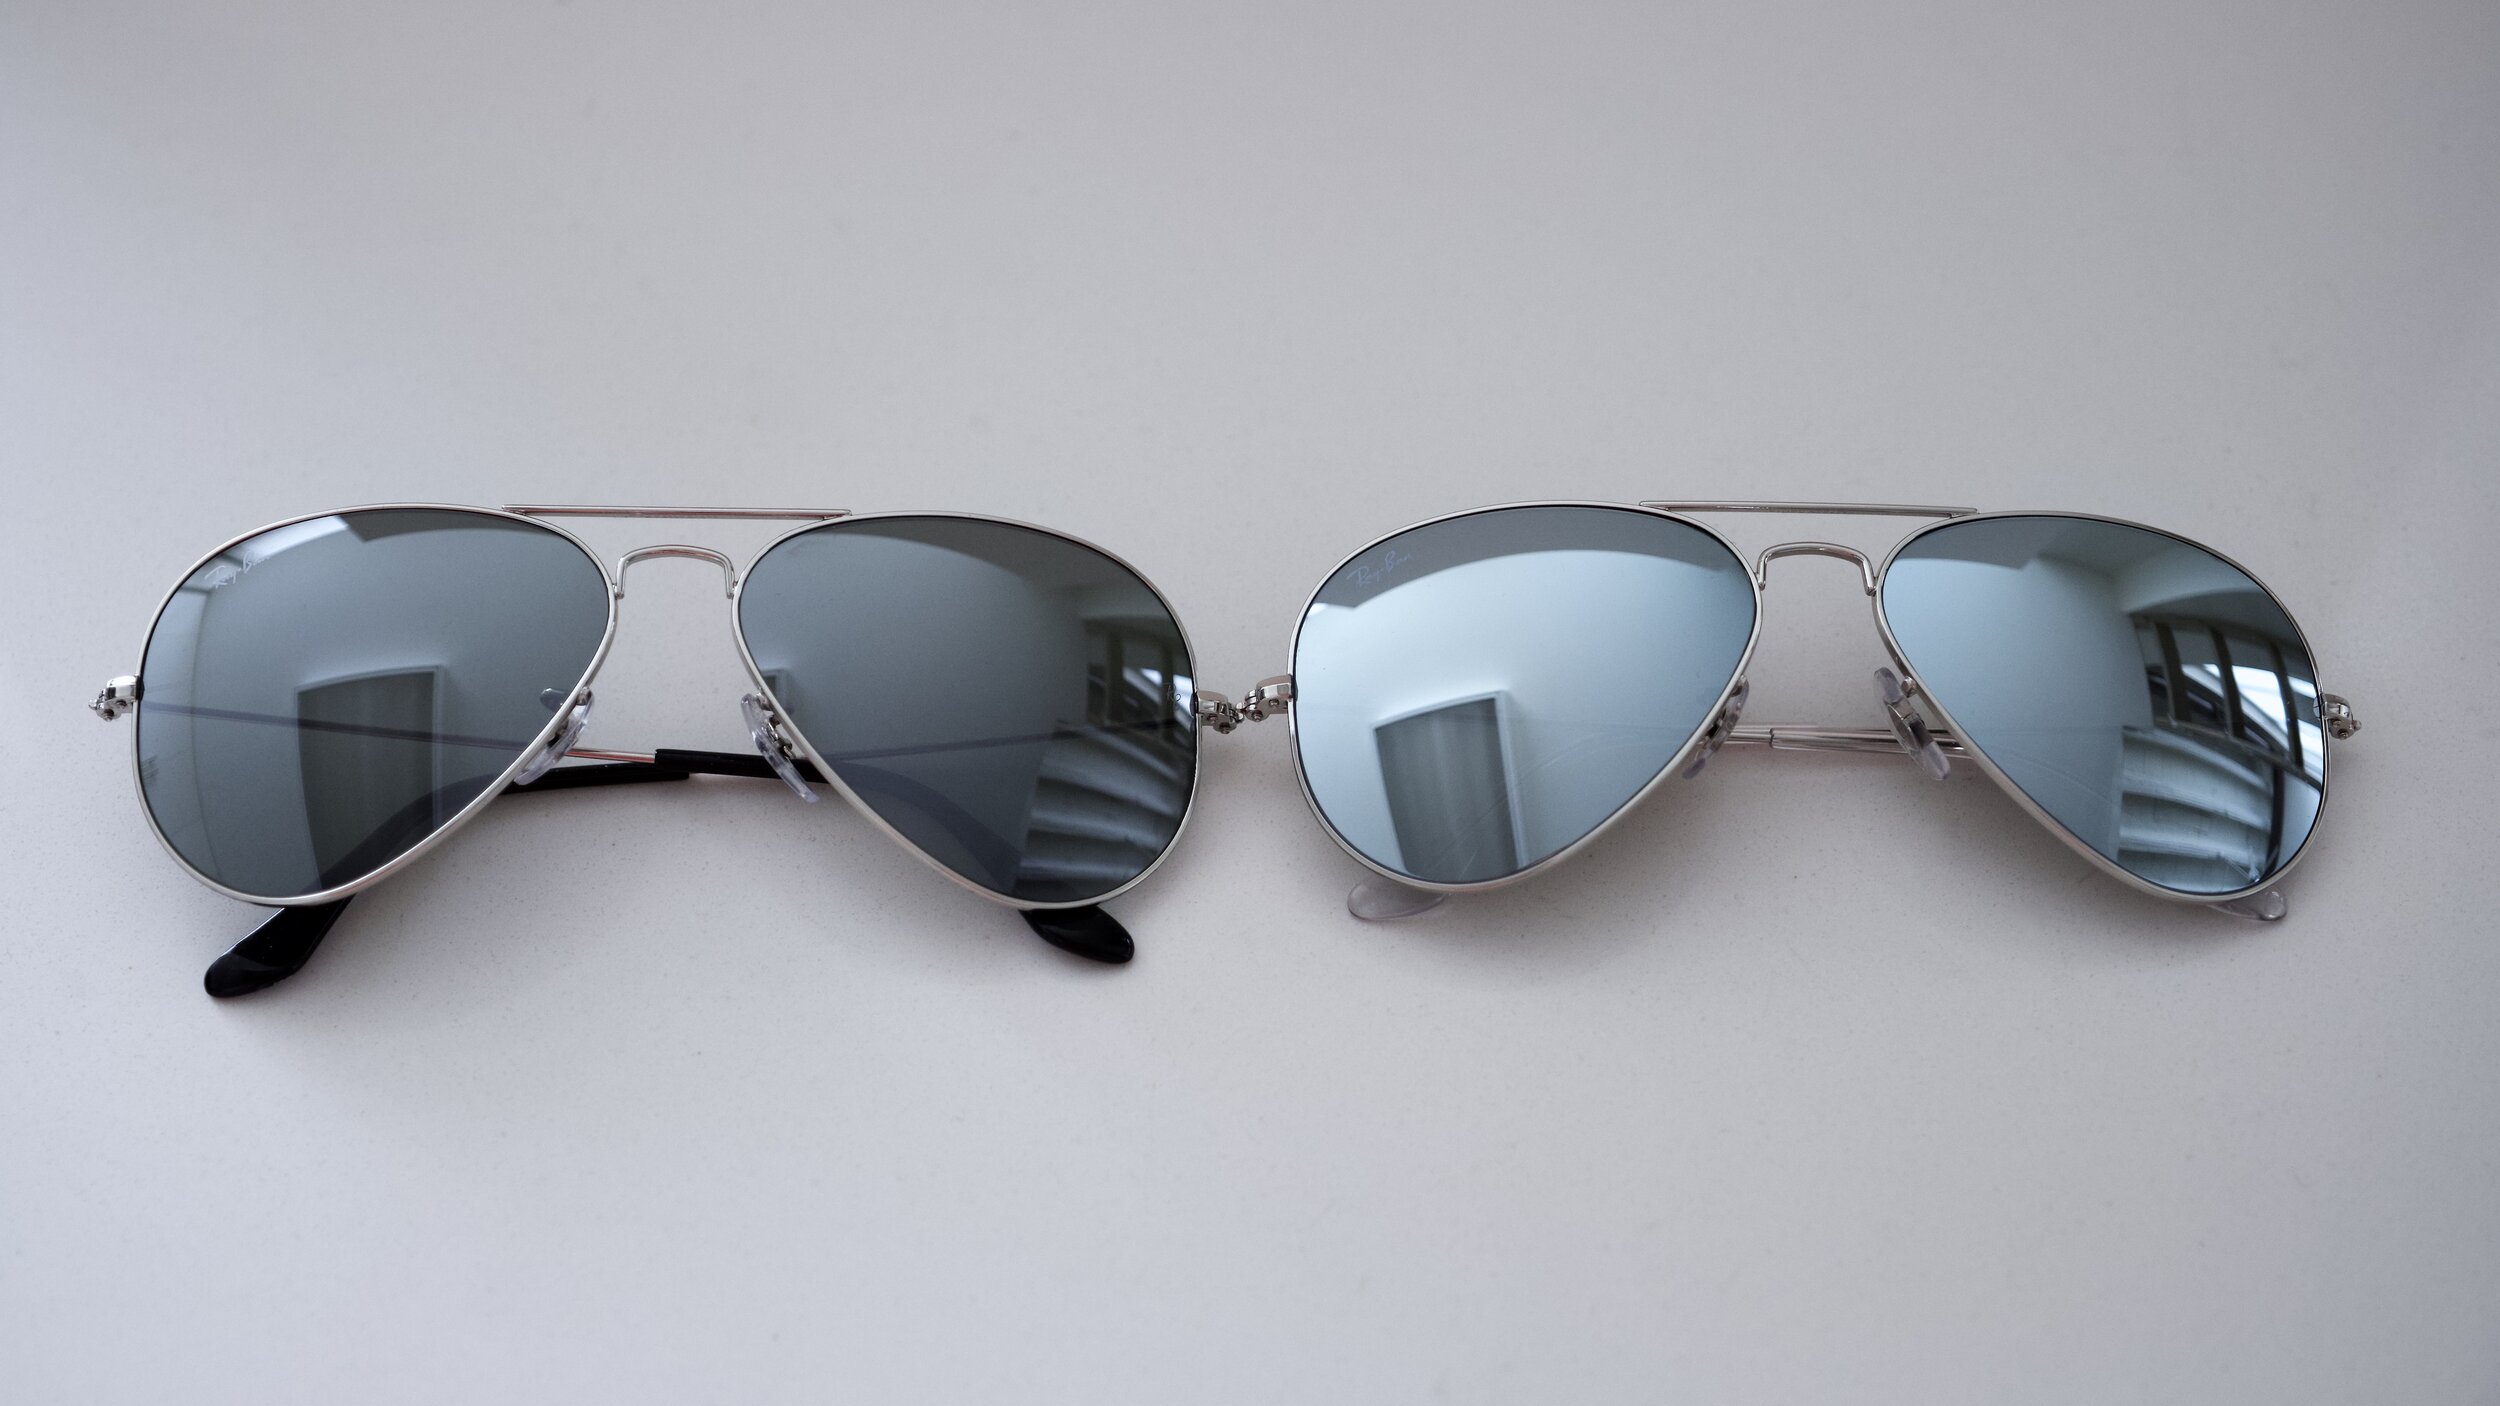 mirrored aviator sunglasses ray ban